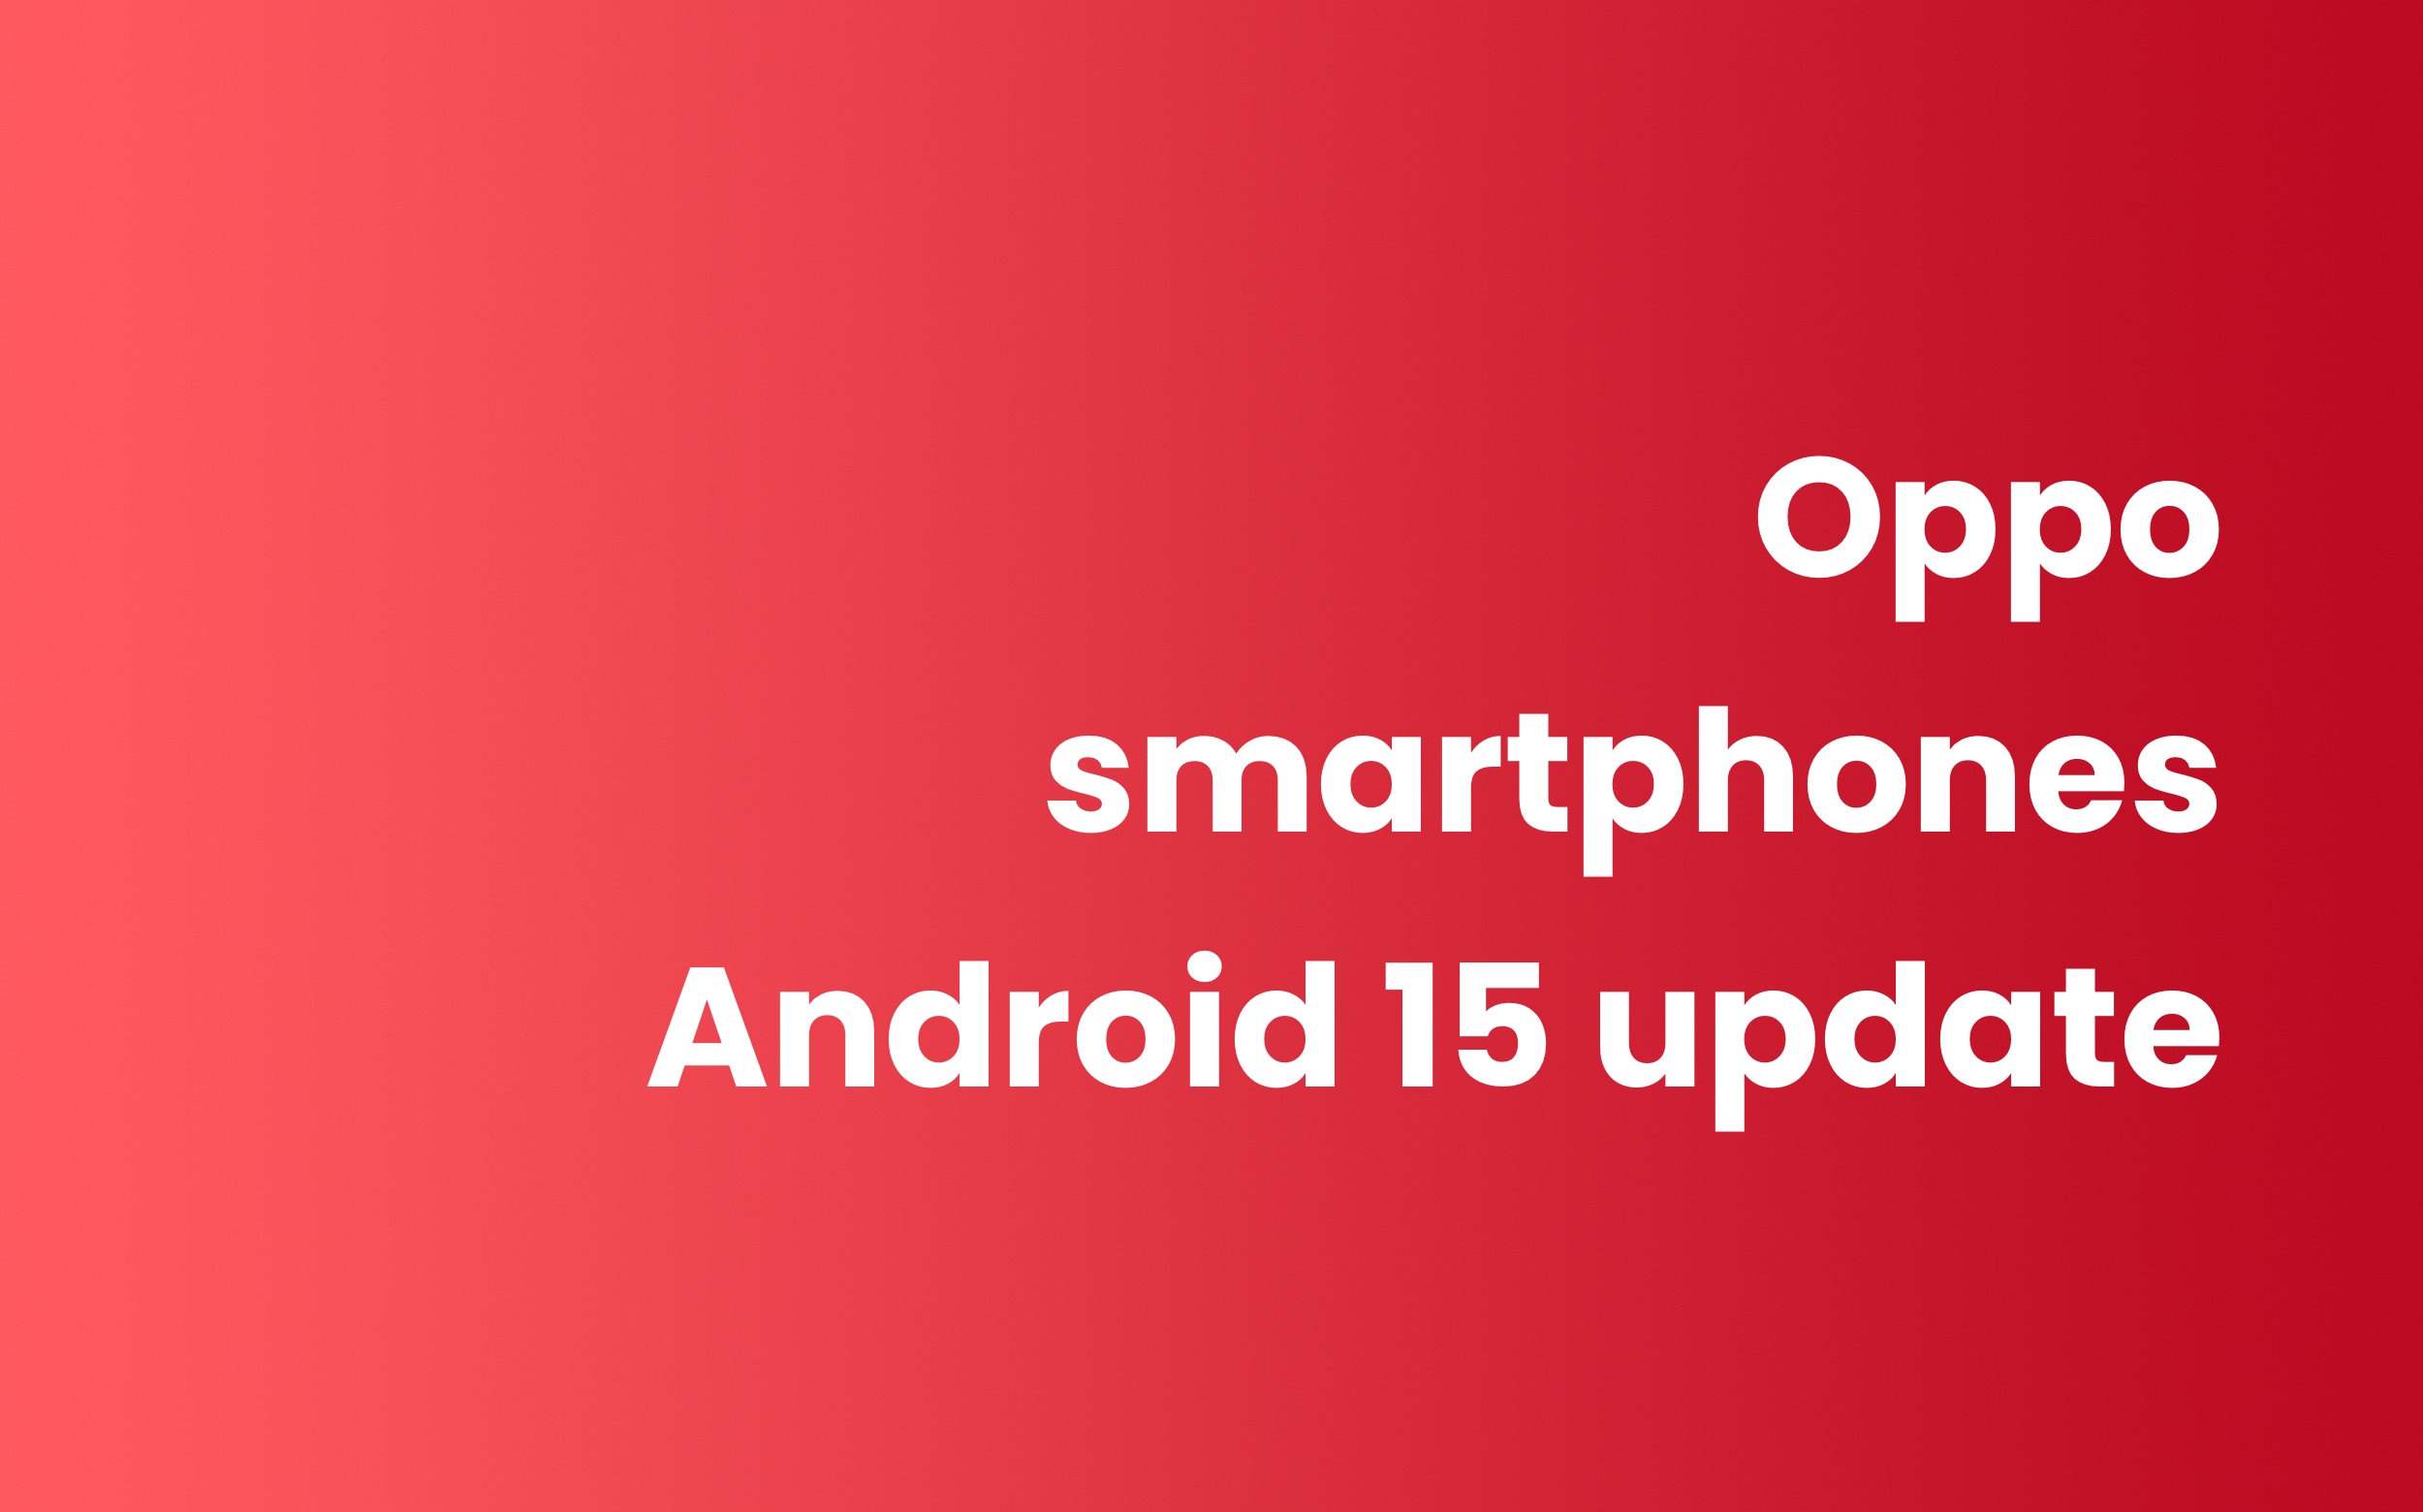 Oppo smartphones met Android 15 update